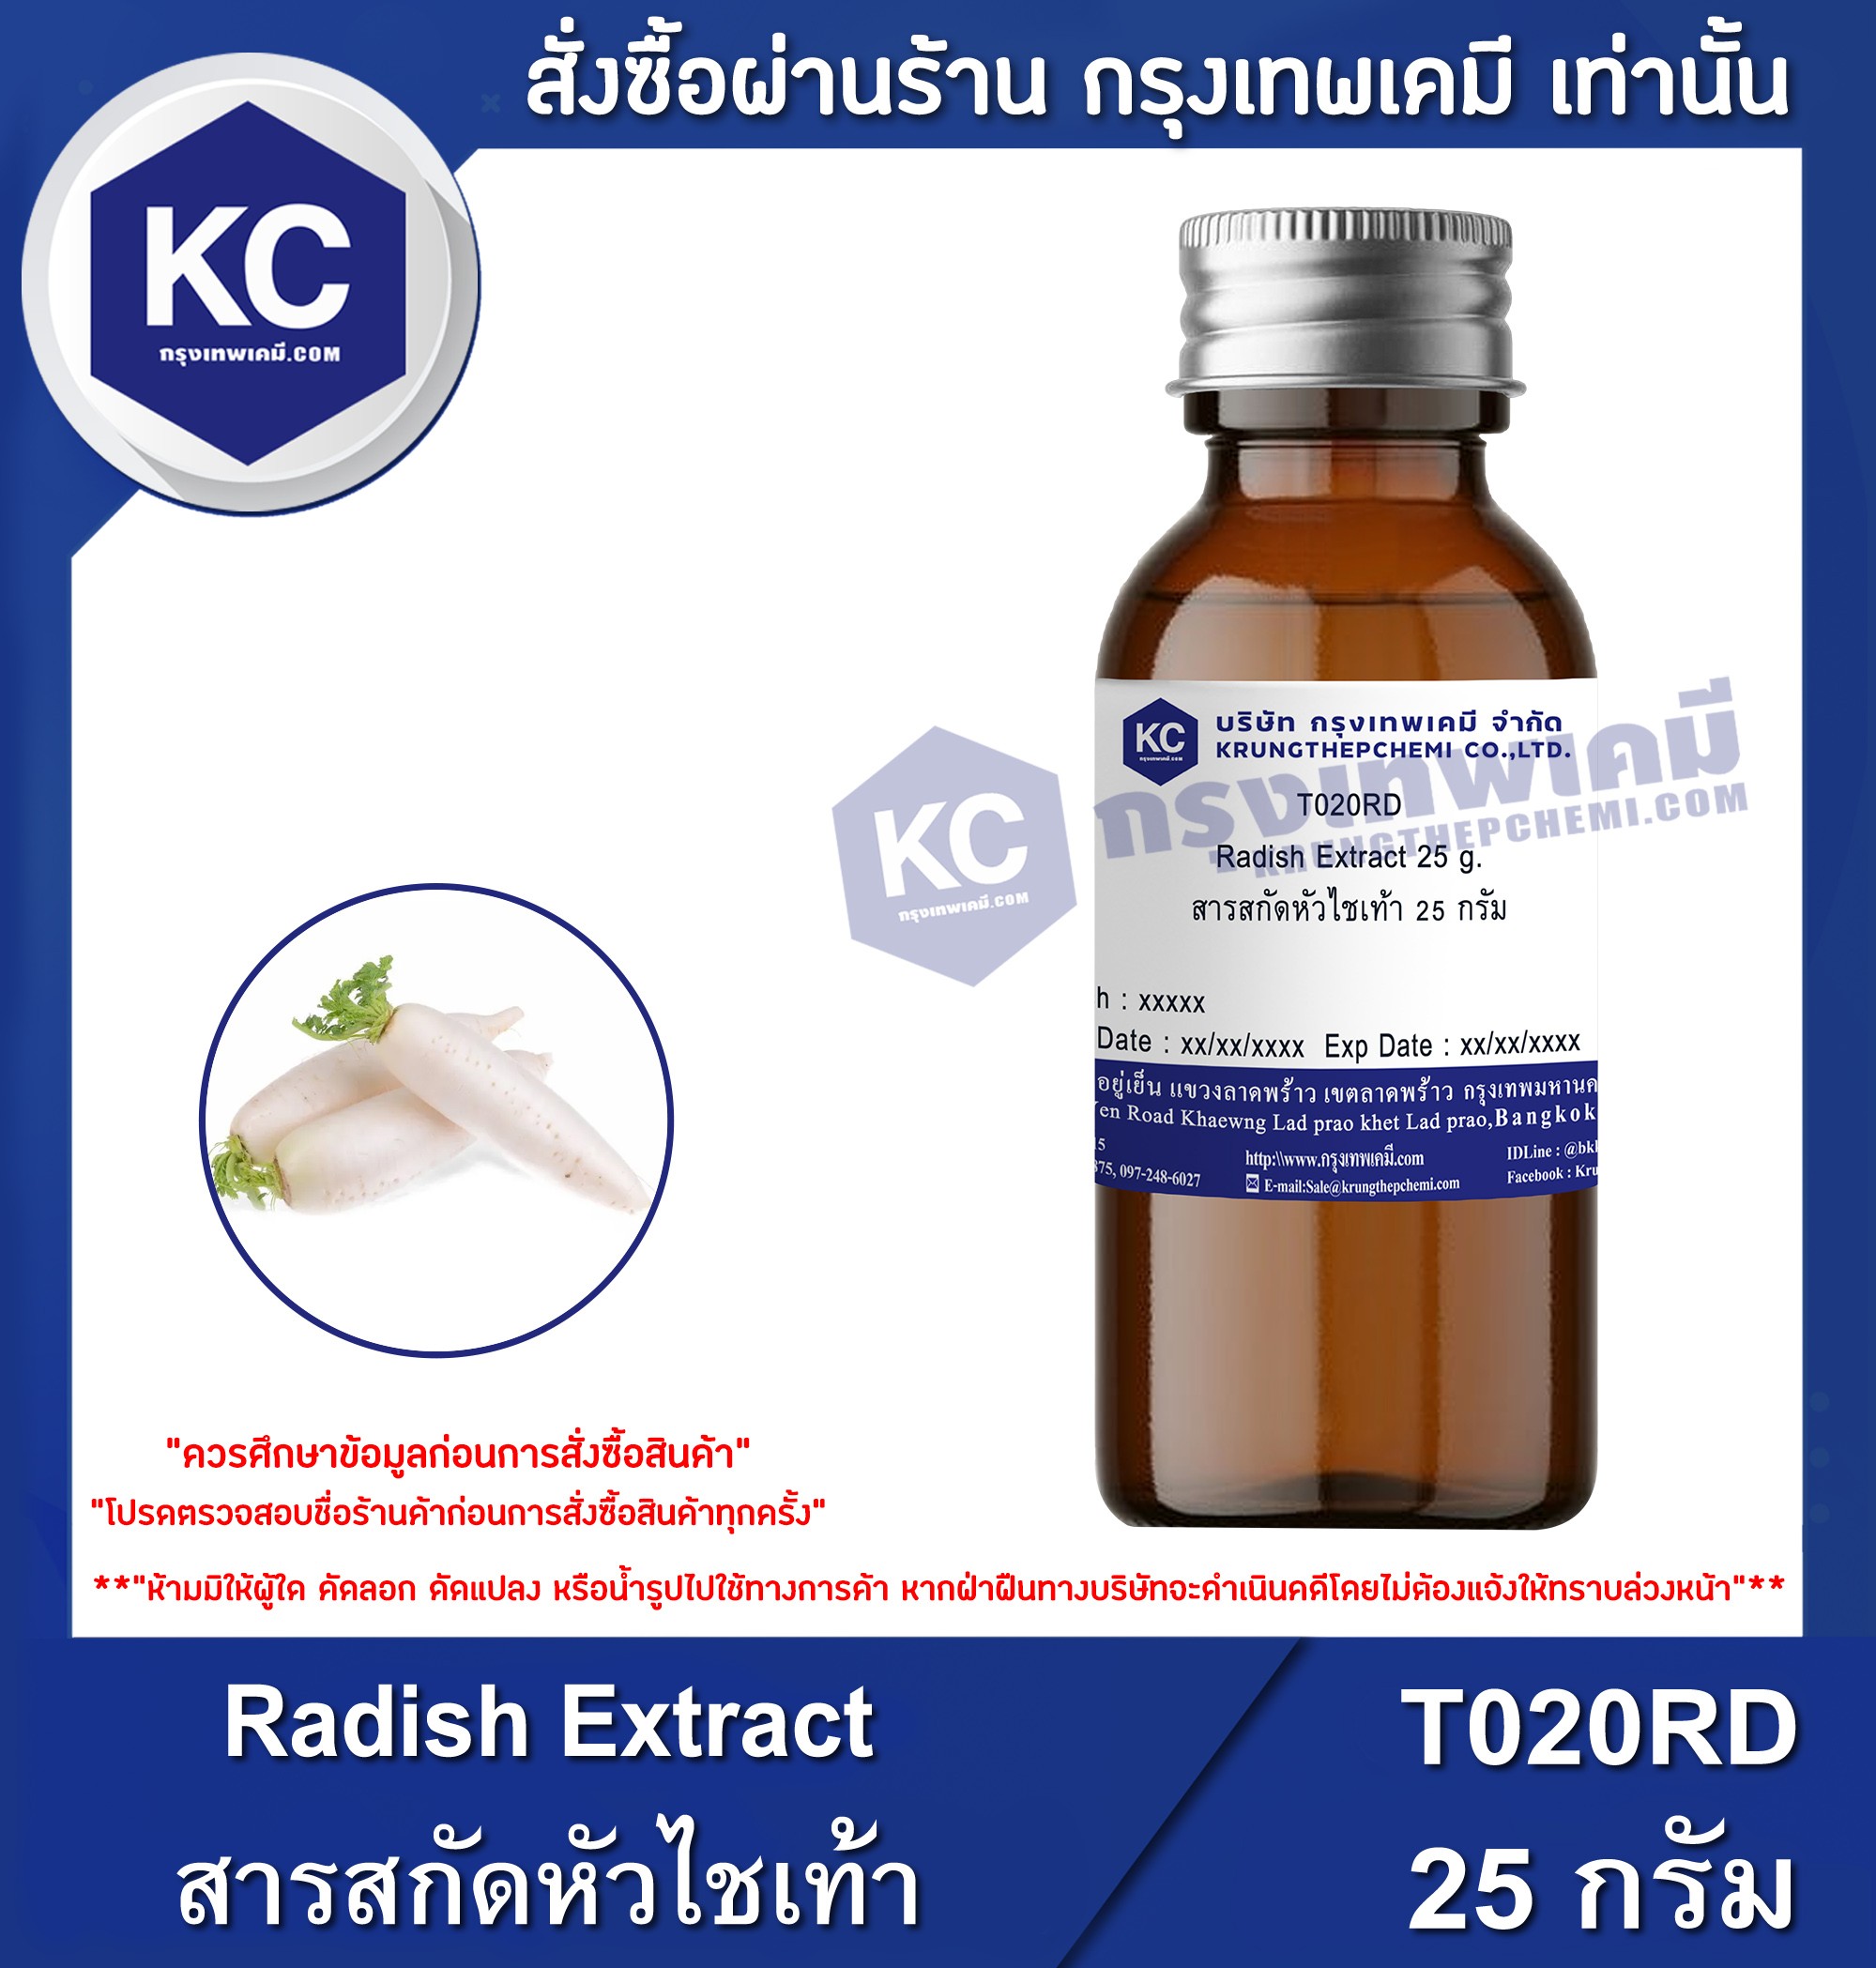 โปรโมชั่น Radish Extract / สารสกัดหัวไชเท้า เกรดเครื่องสำอางค์ (Cosmatic grade) (T020RD)